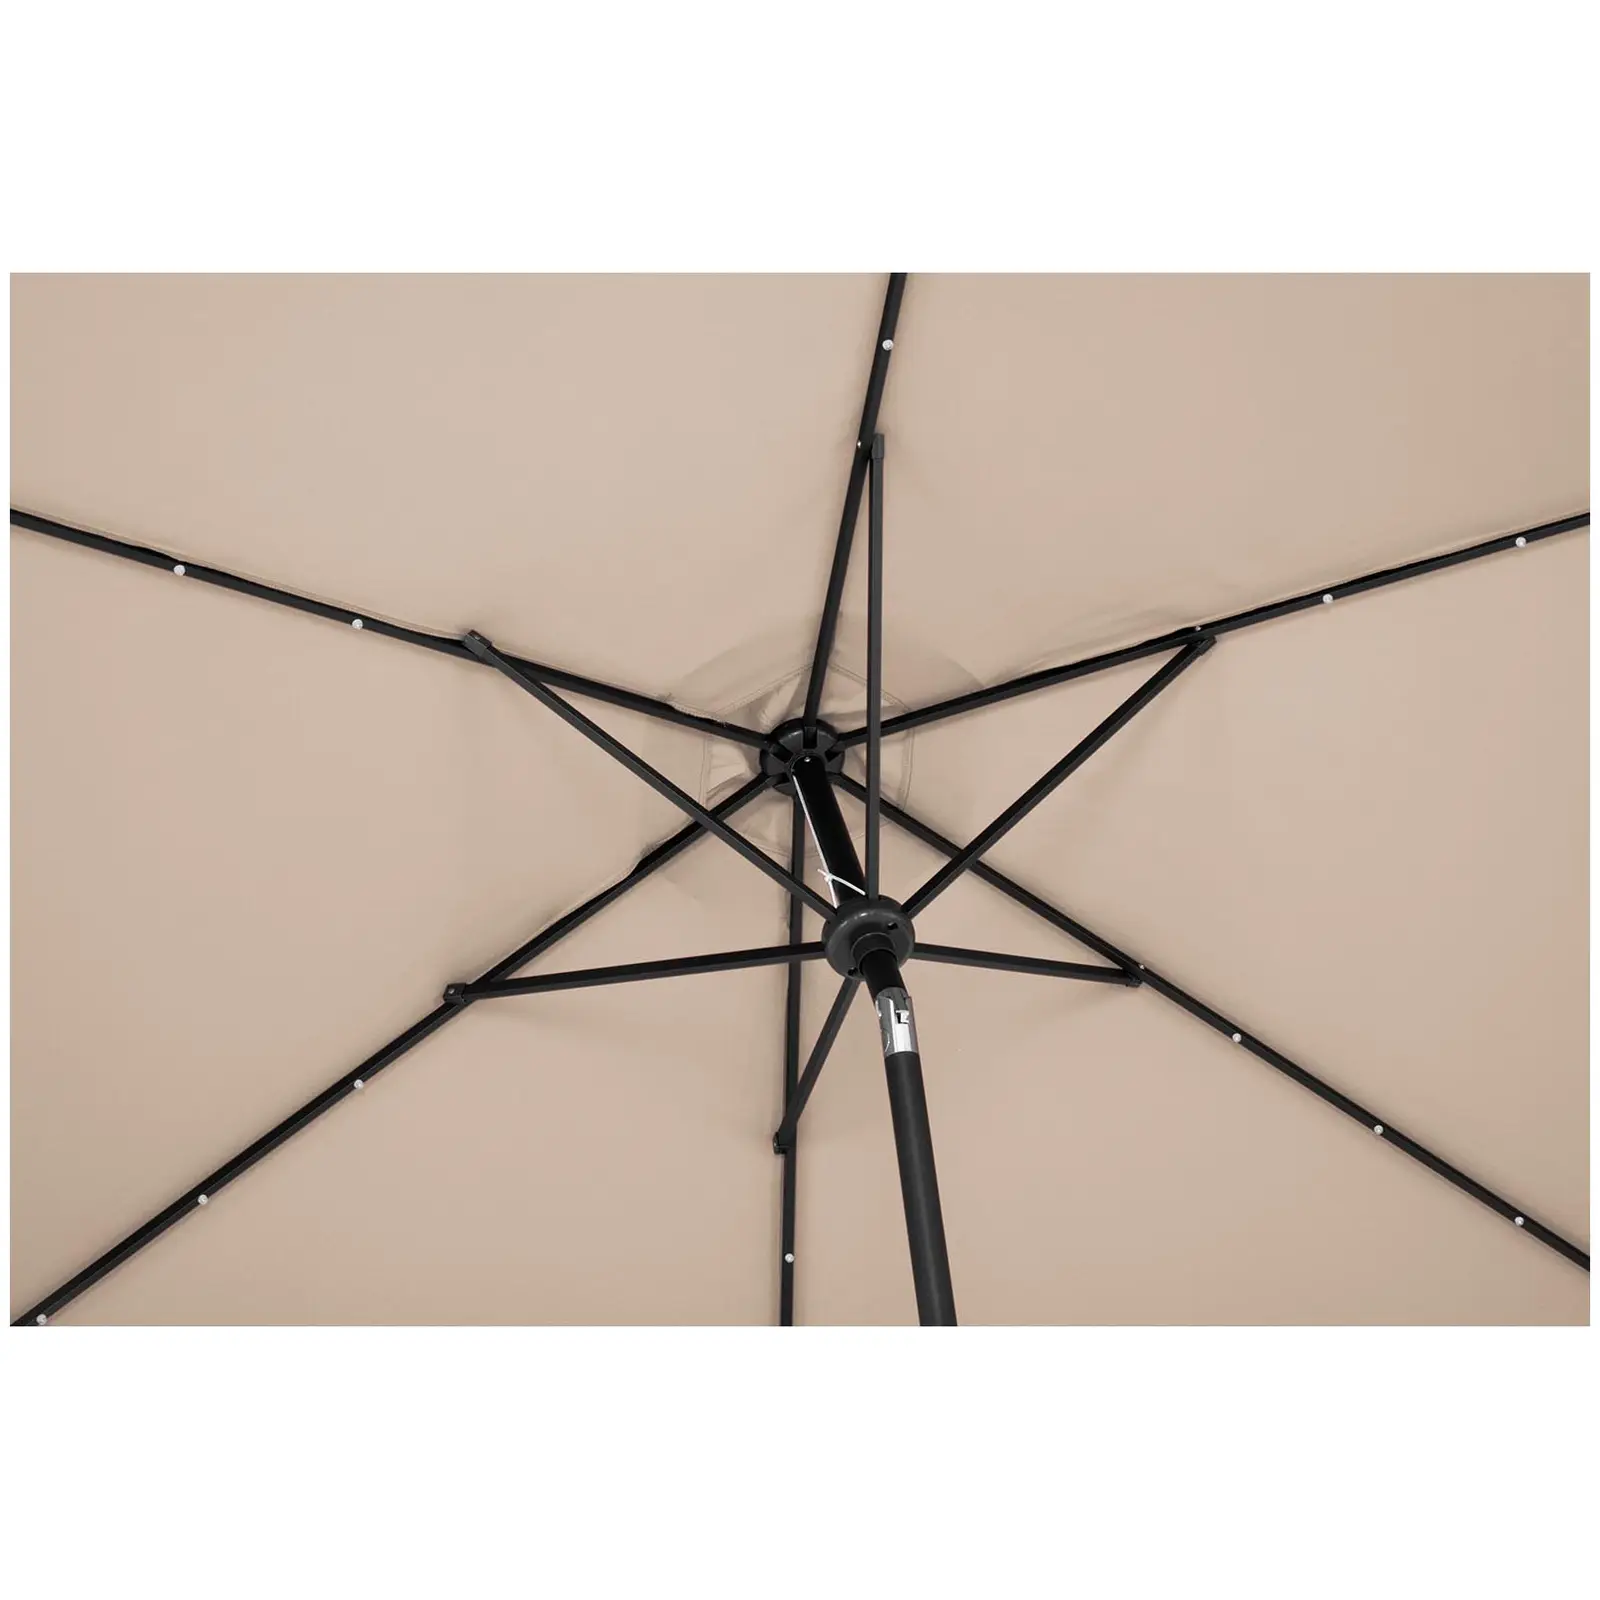 Parasol avec LED - Crème - Rond - Ø 300 cm - Inclinable